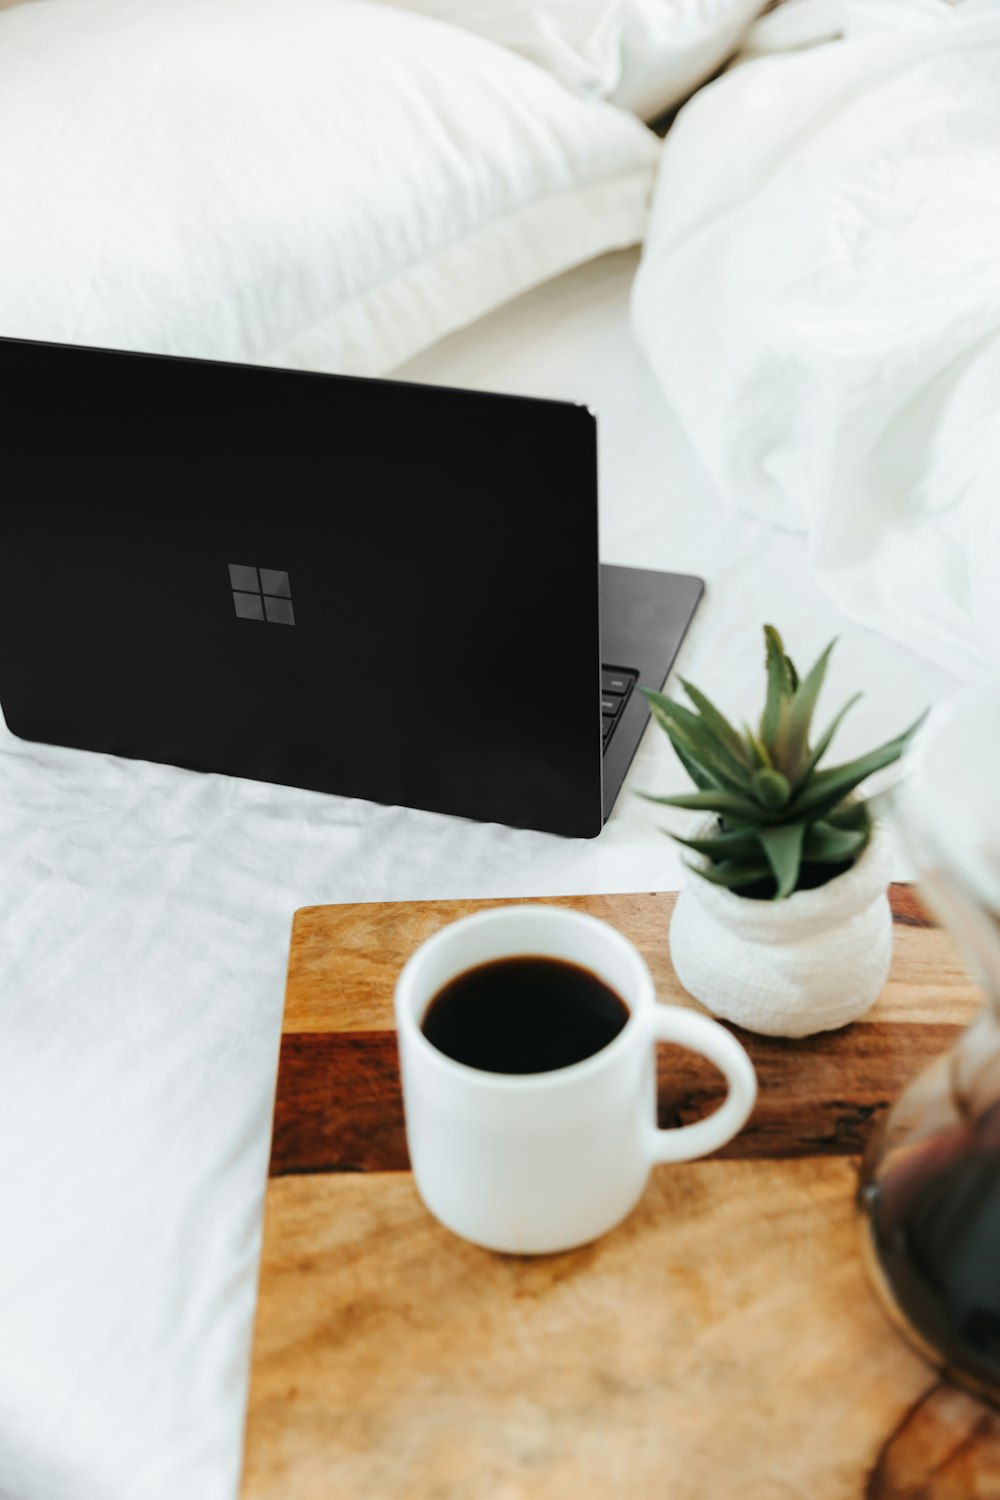 Computadora portátil Microsoft Surface negra junto a una taza de cerámica blanca sobre una cama blanca 